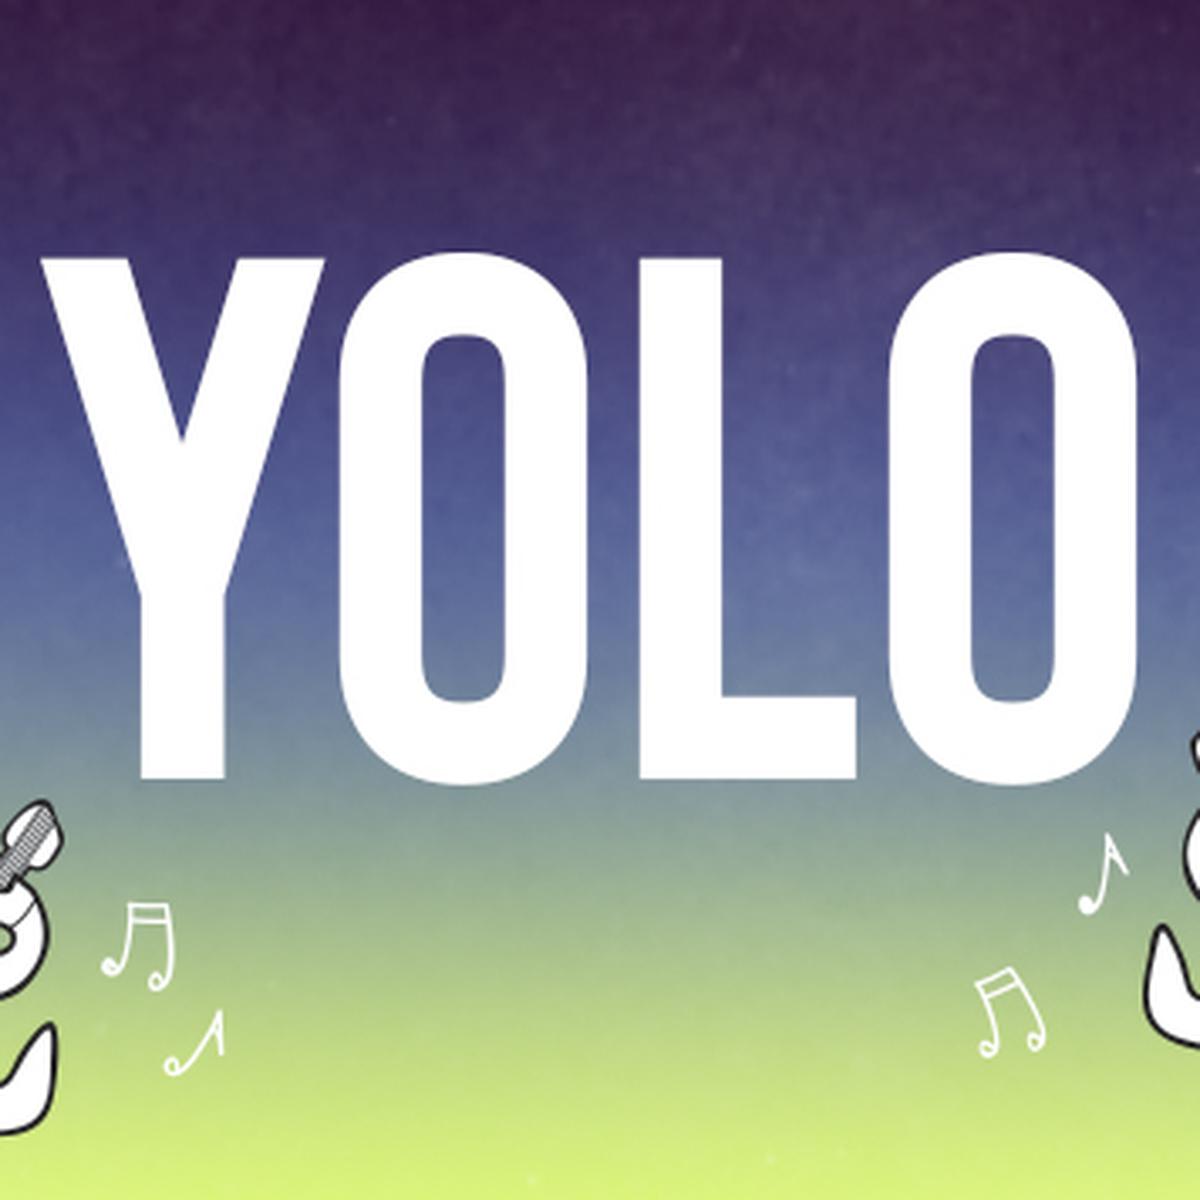 YOLO (You Only Live Once): significado, como surgiu e memes